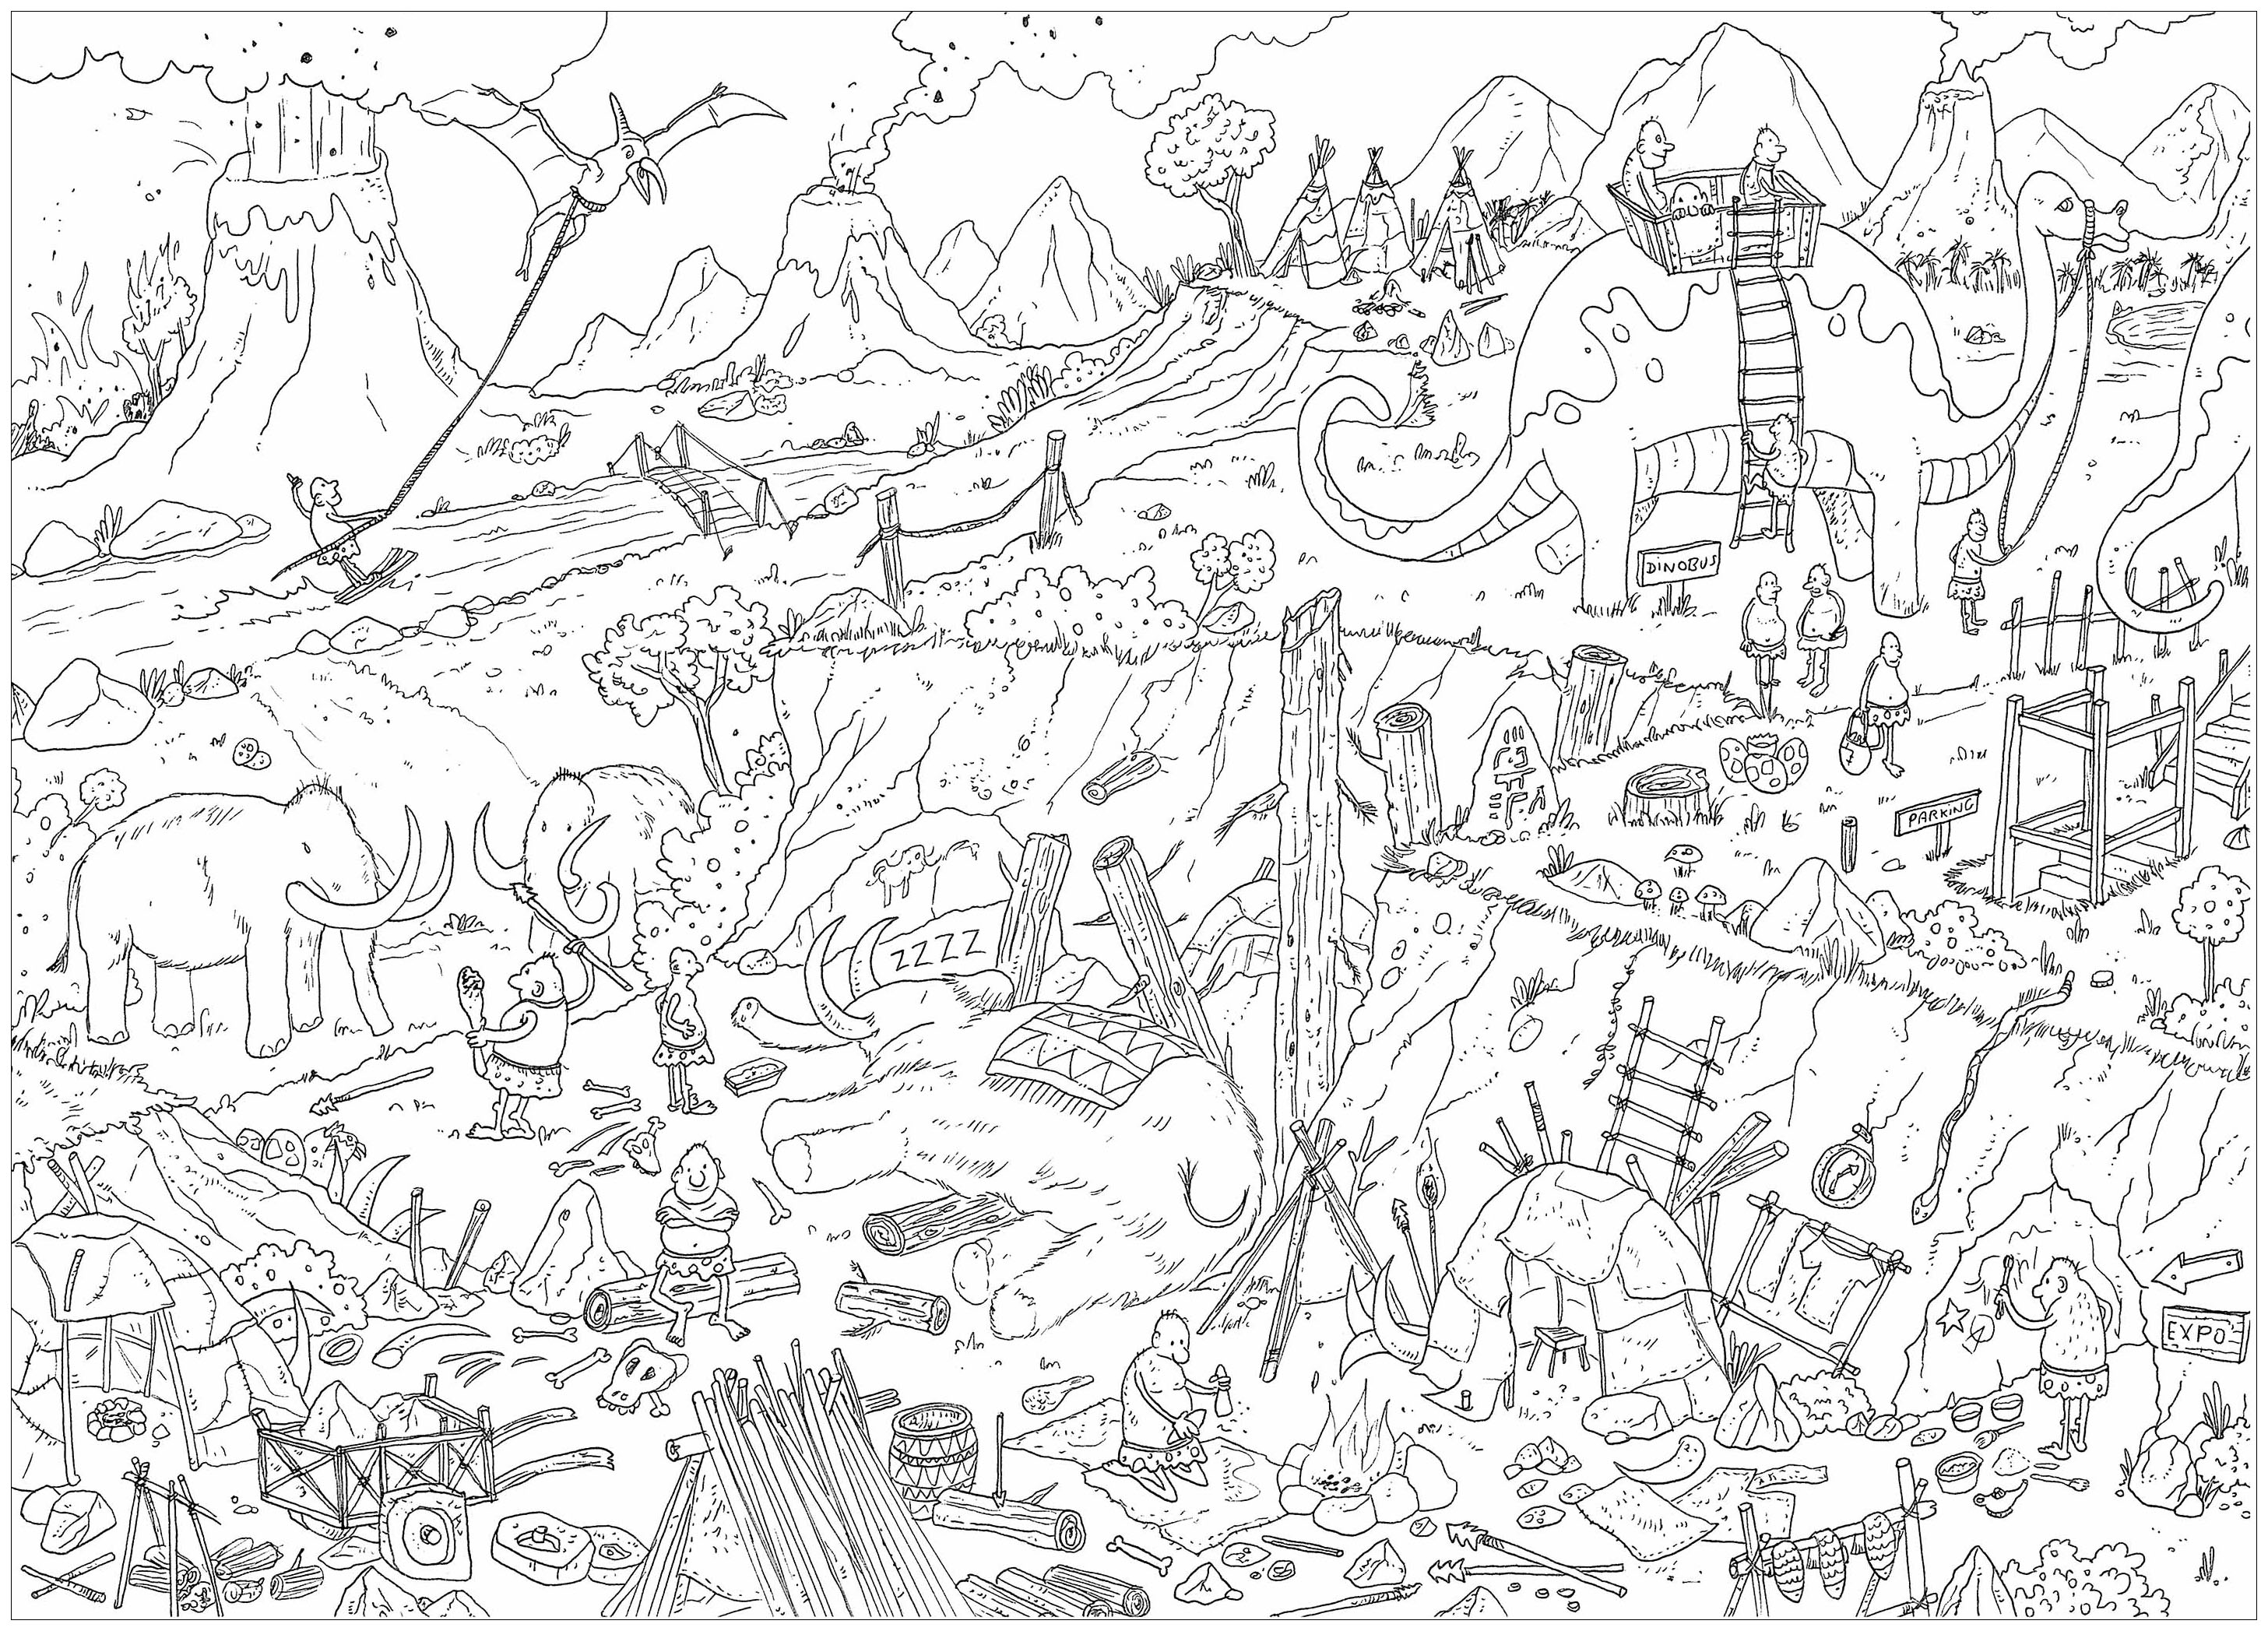 'Preistoria', una pagina da colorare complessa, in stile 'Dov'è Waldo?